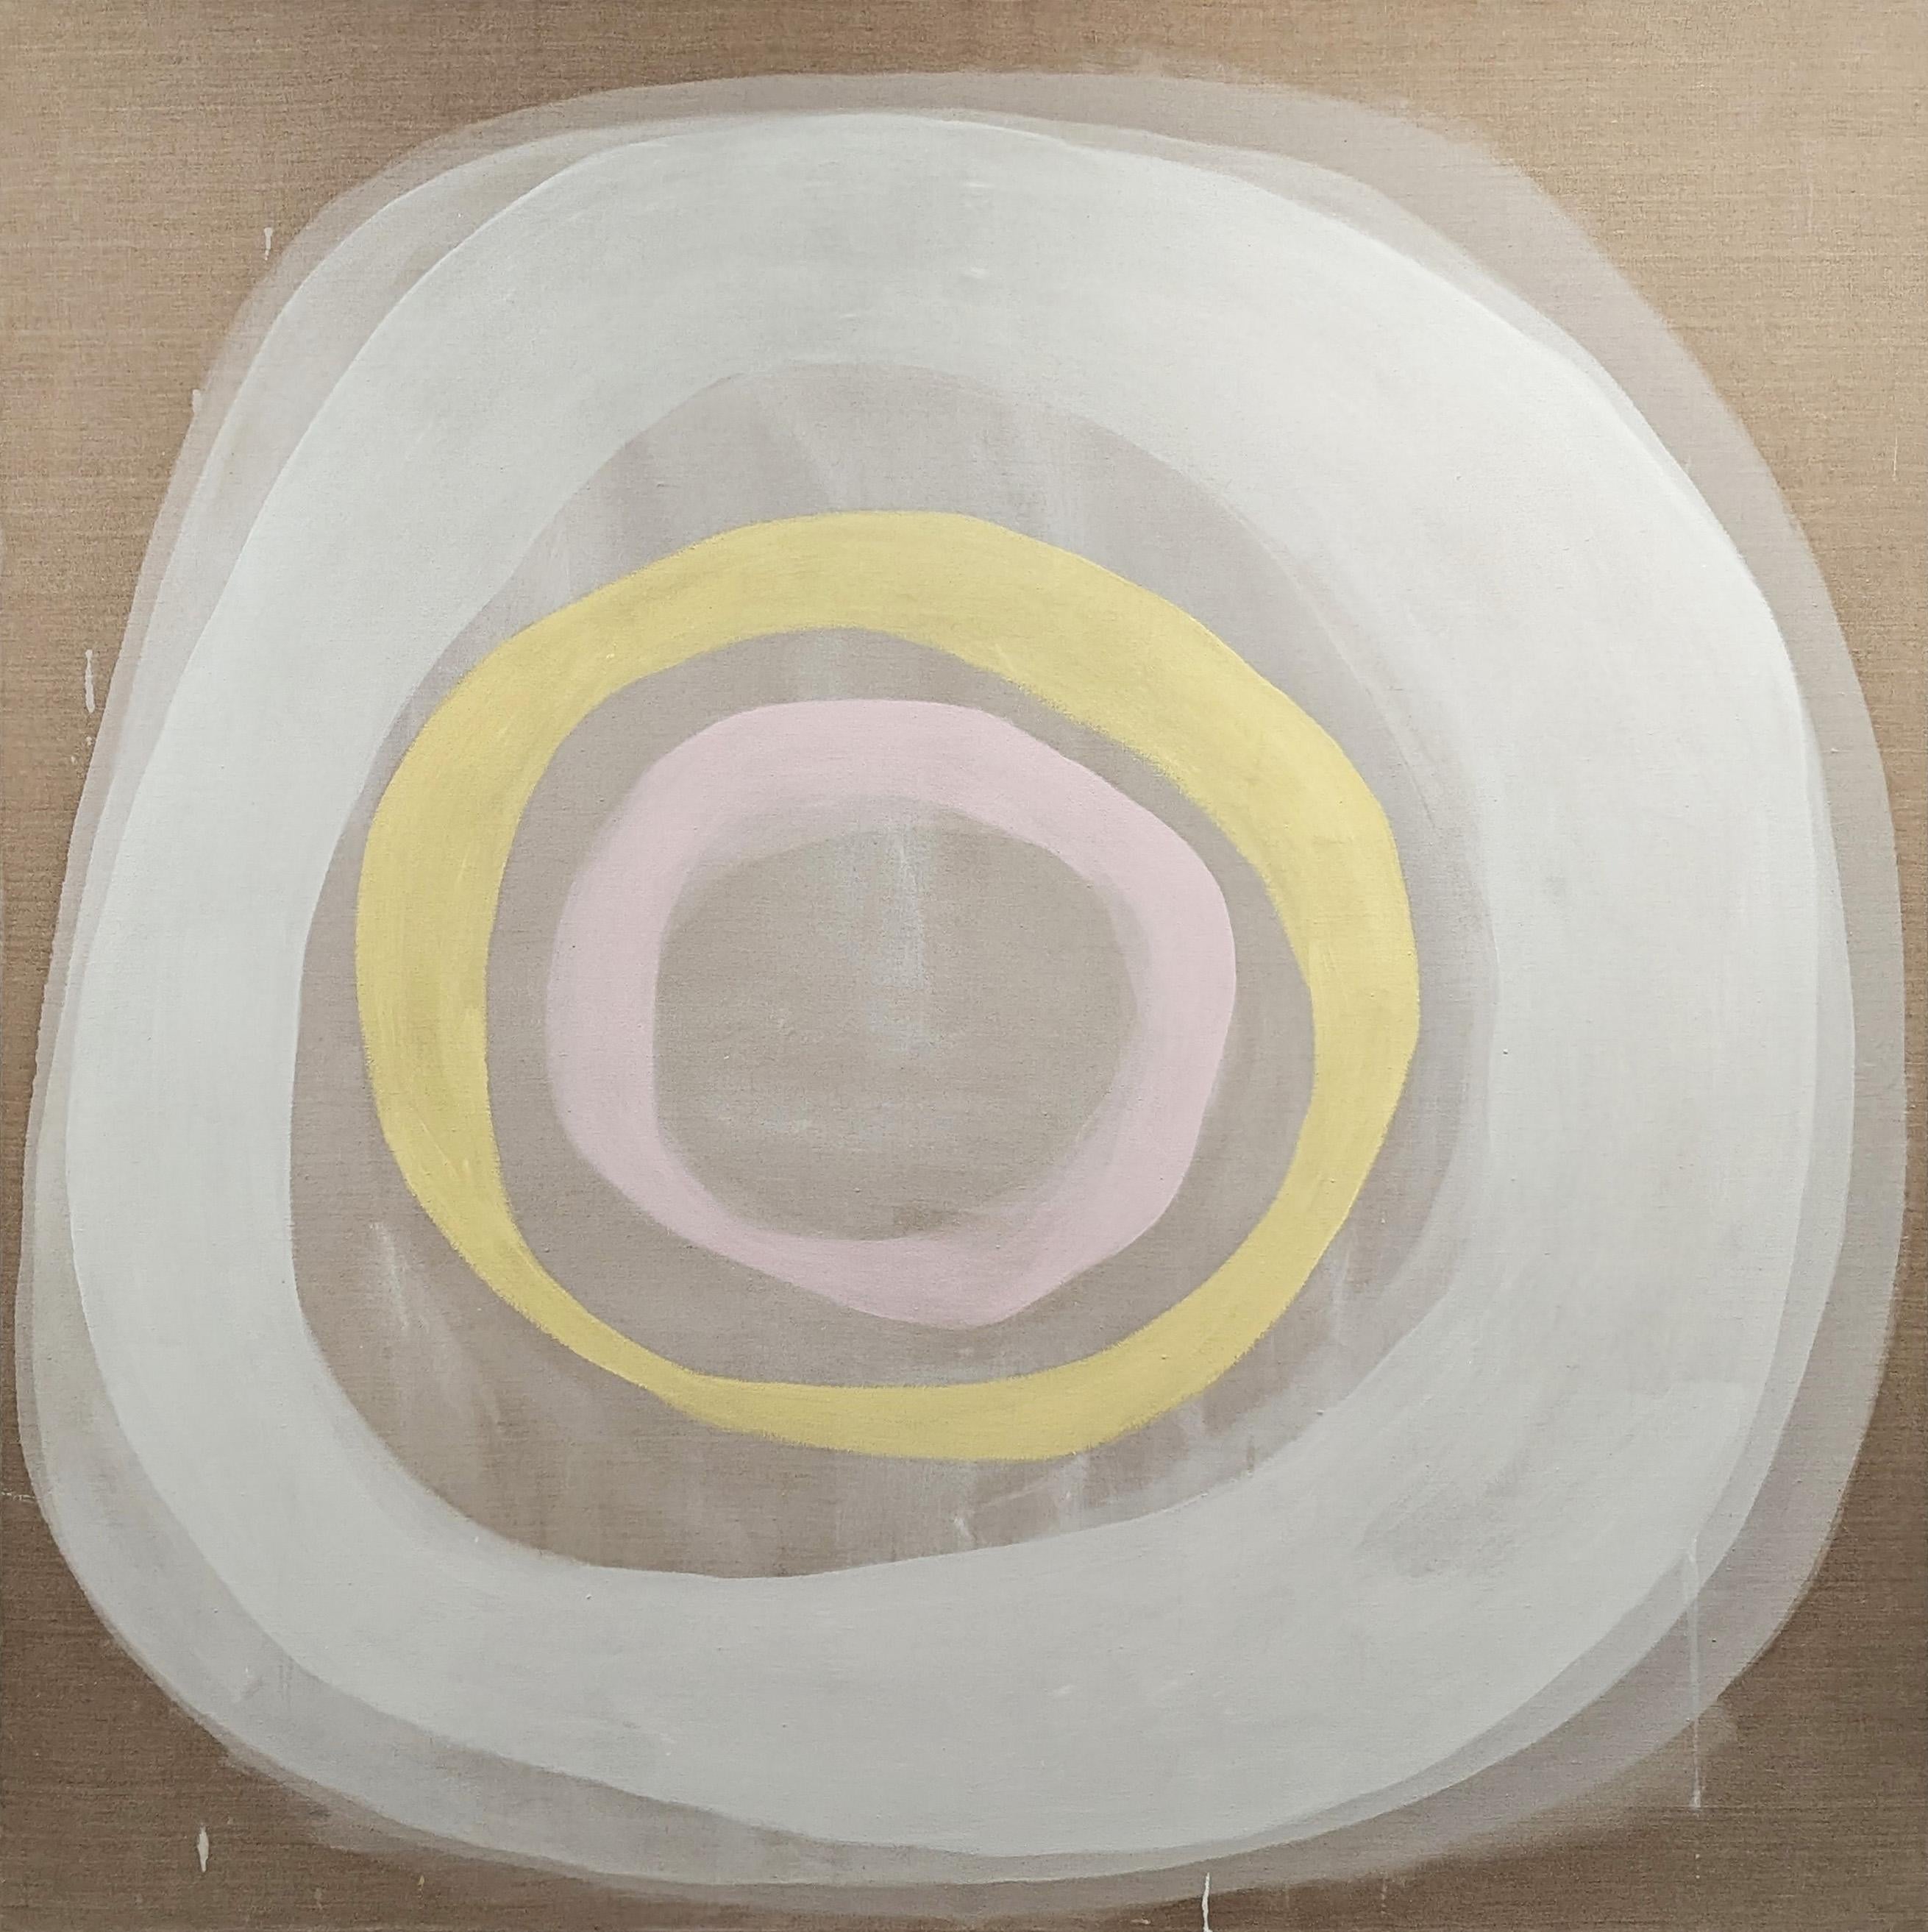 Abstract Painting Benji Stiles - "Une journée productive de rien" Peinture abstraite contemporaine au pastel en cercle.